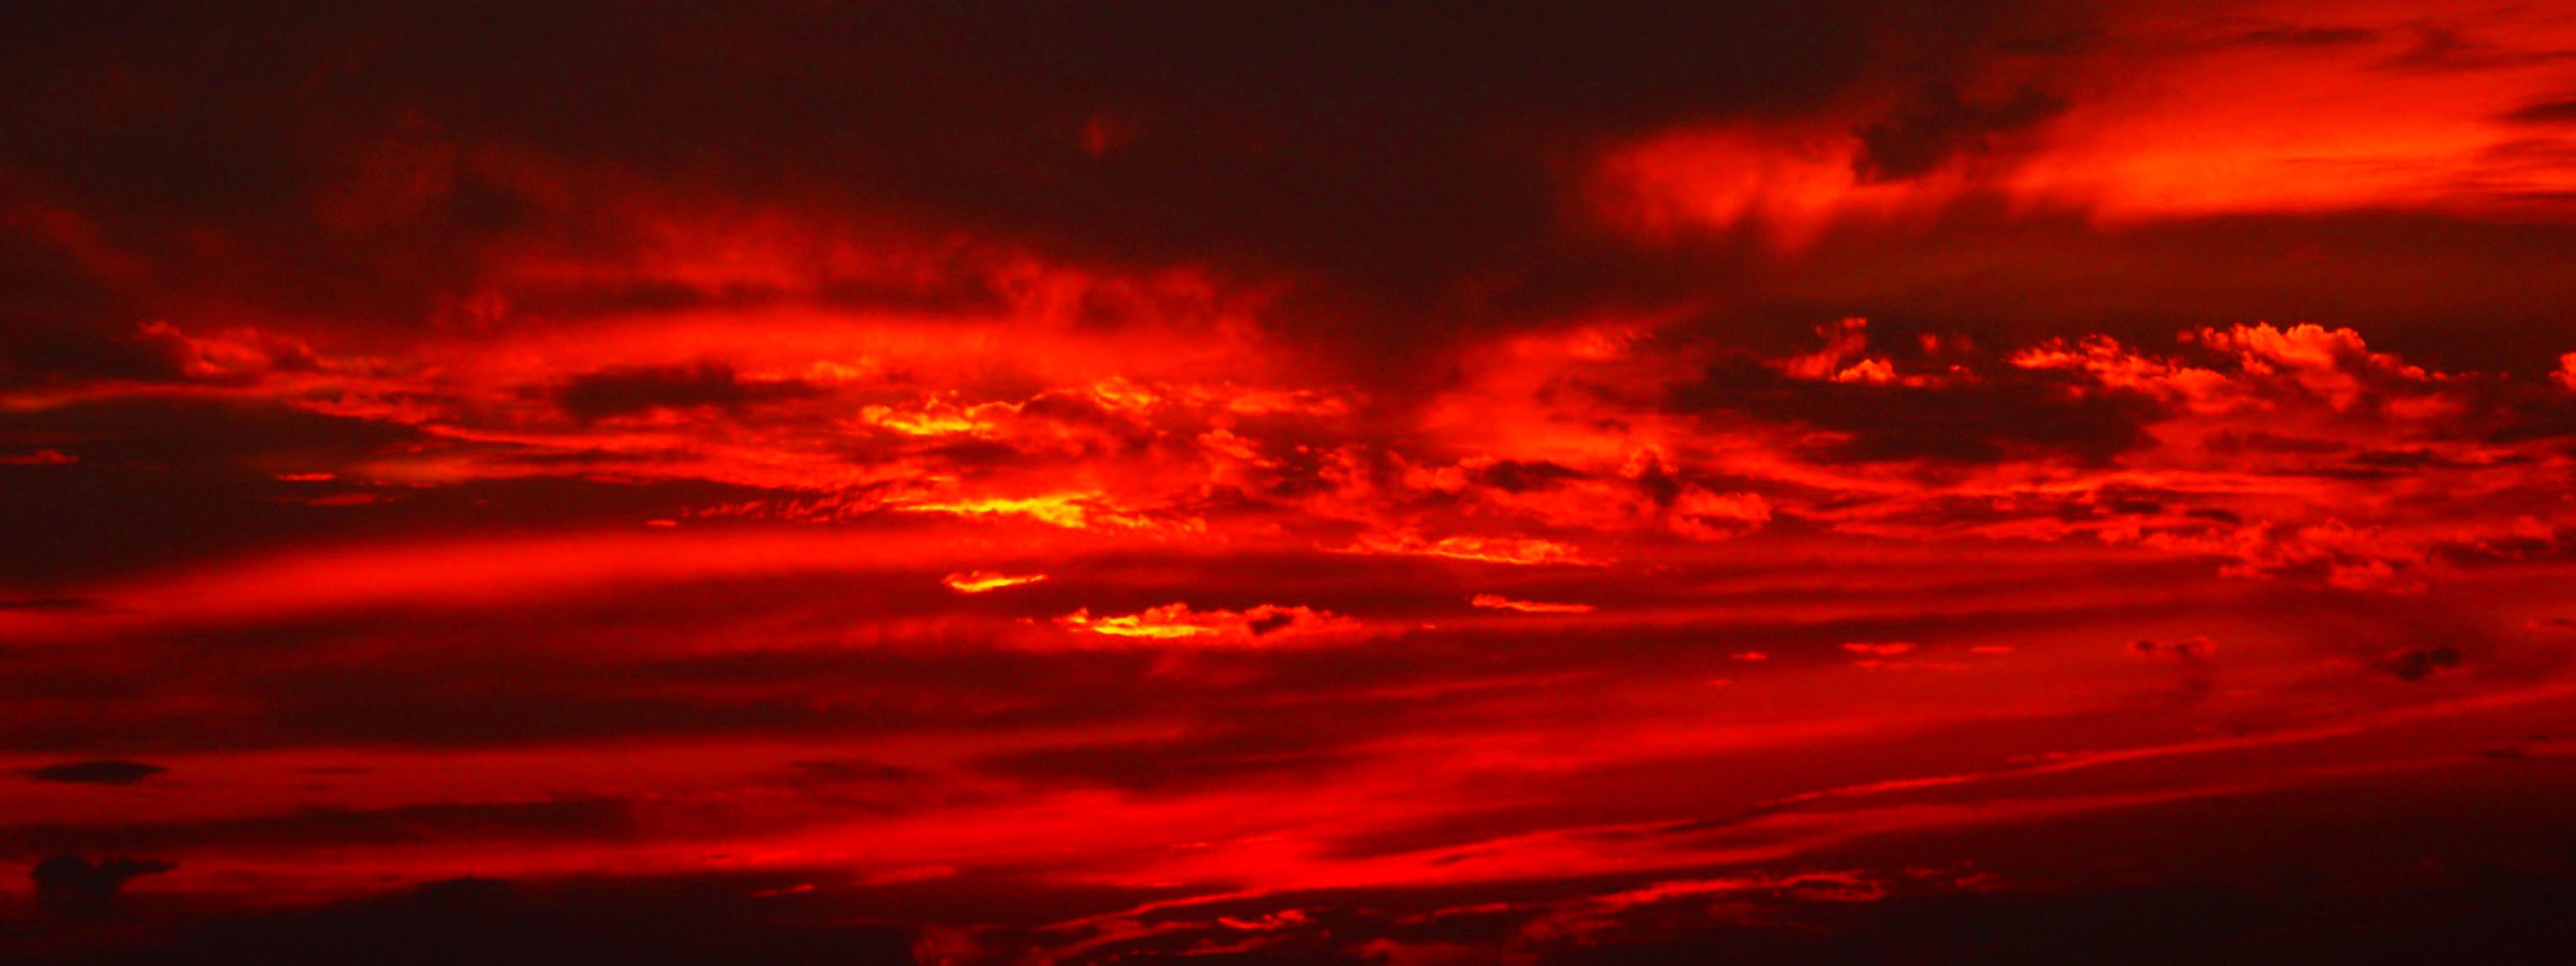 fire-red-sky1.jpg